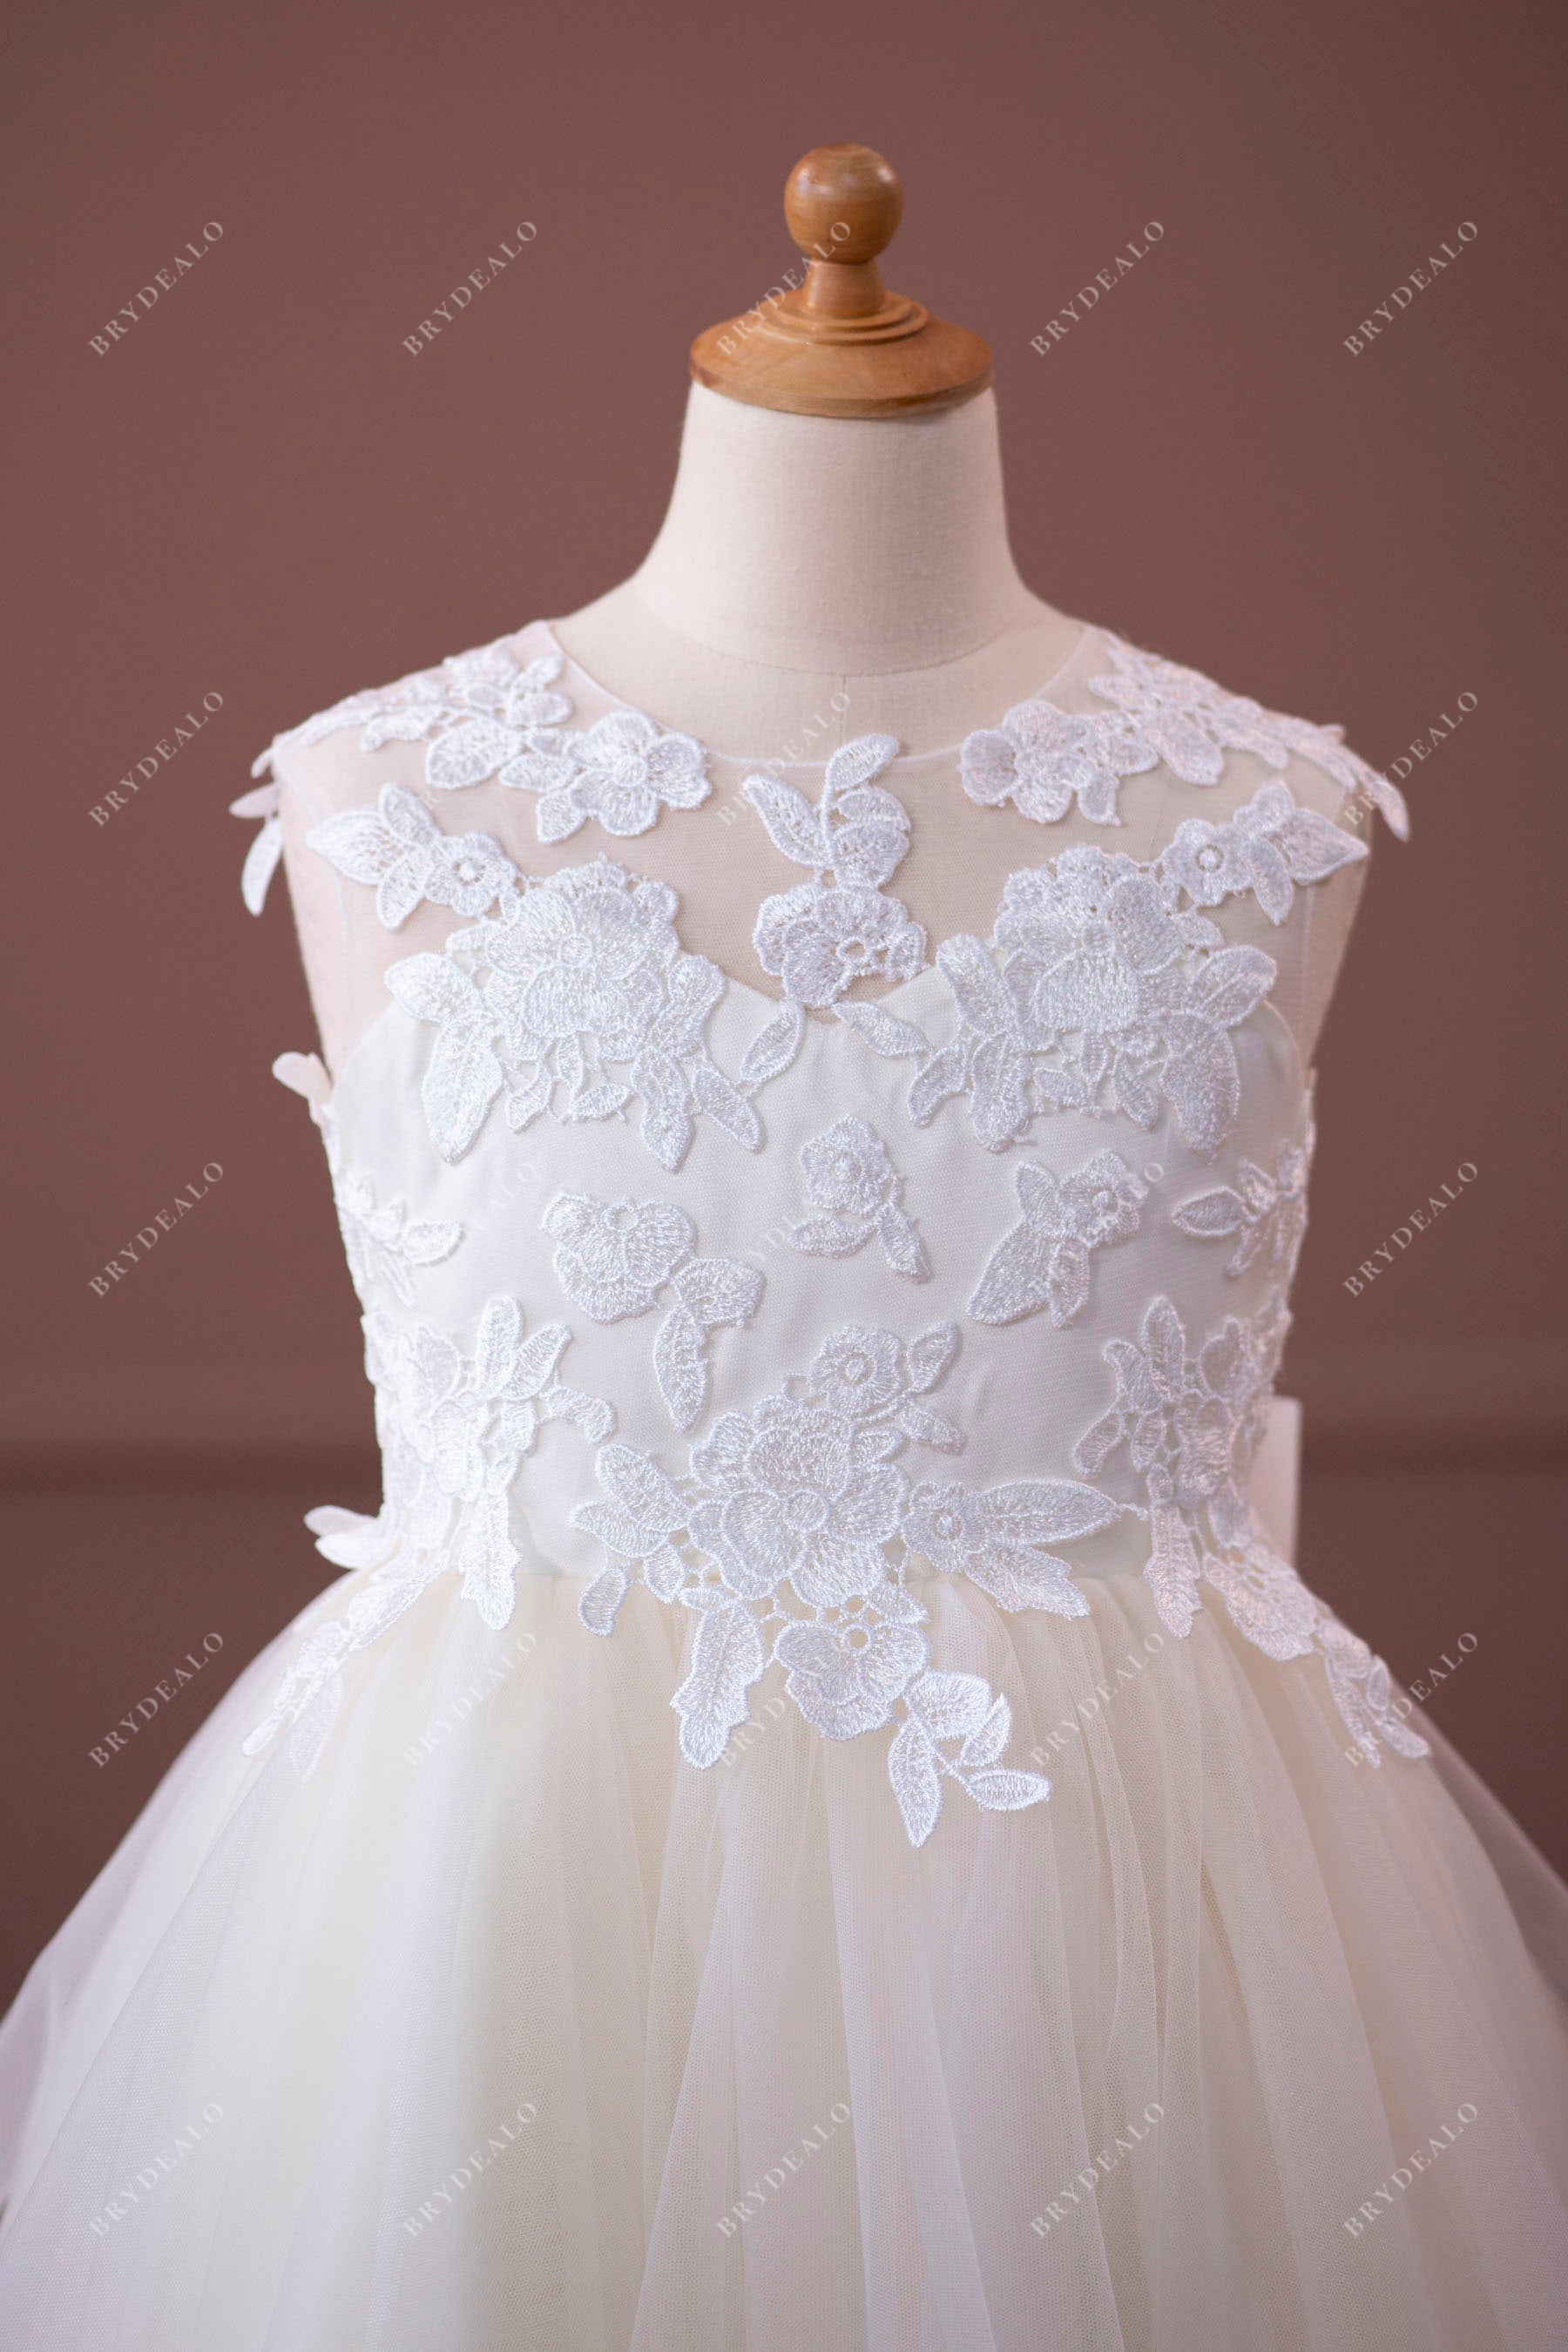 custom lace tulle flower girl dress for wedding